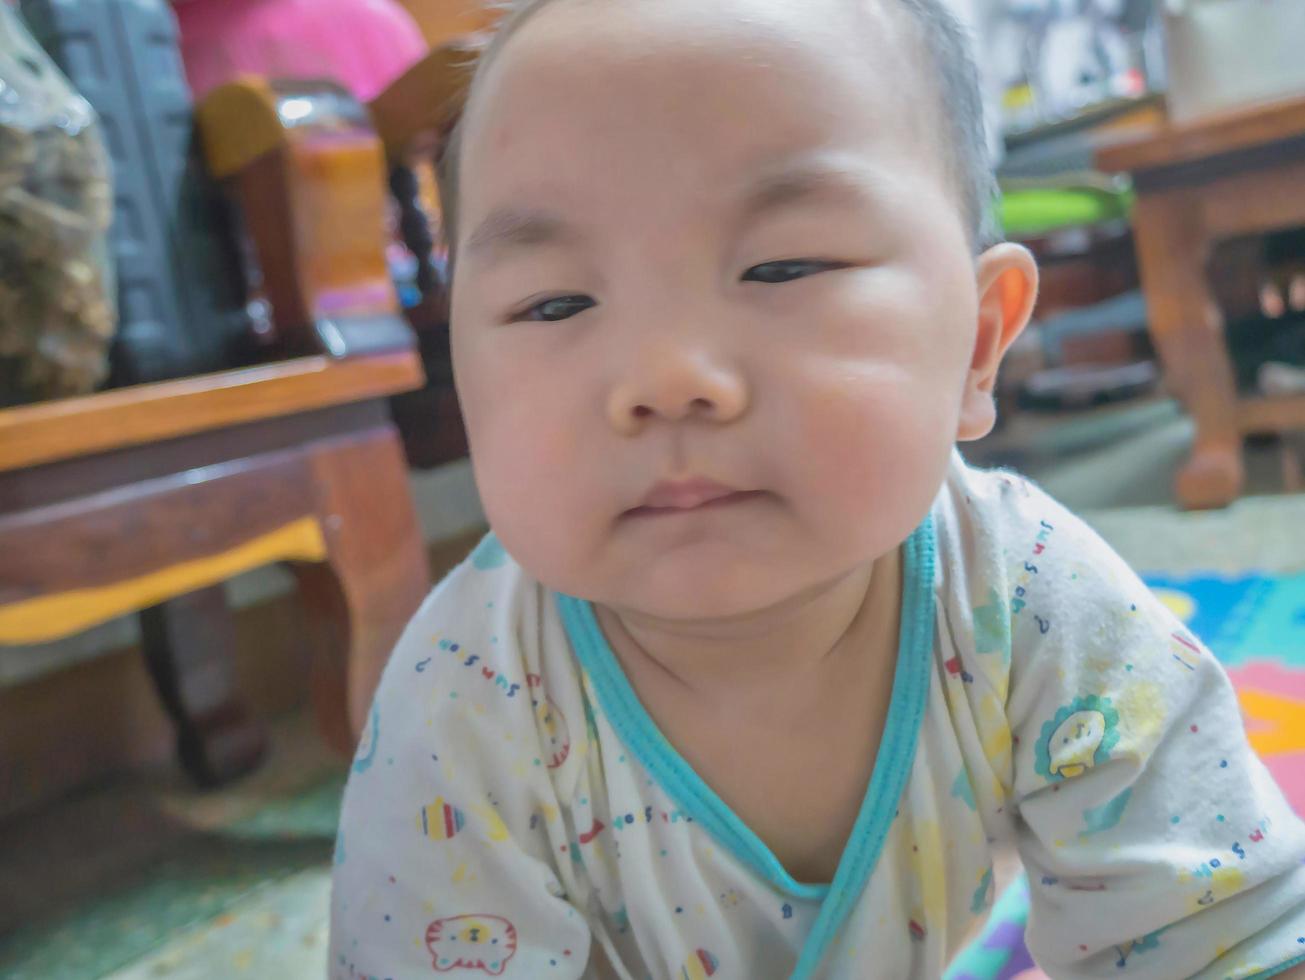 cutie bel bambino asiatico fa una faccia noiosa foto